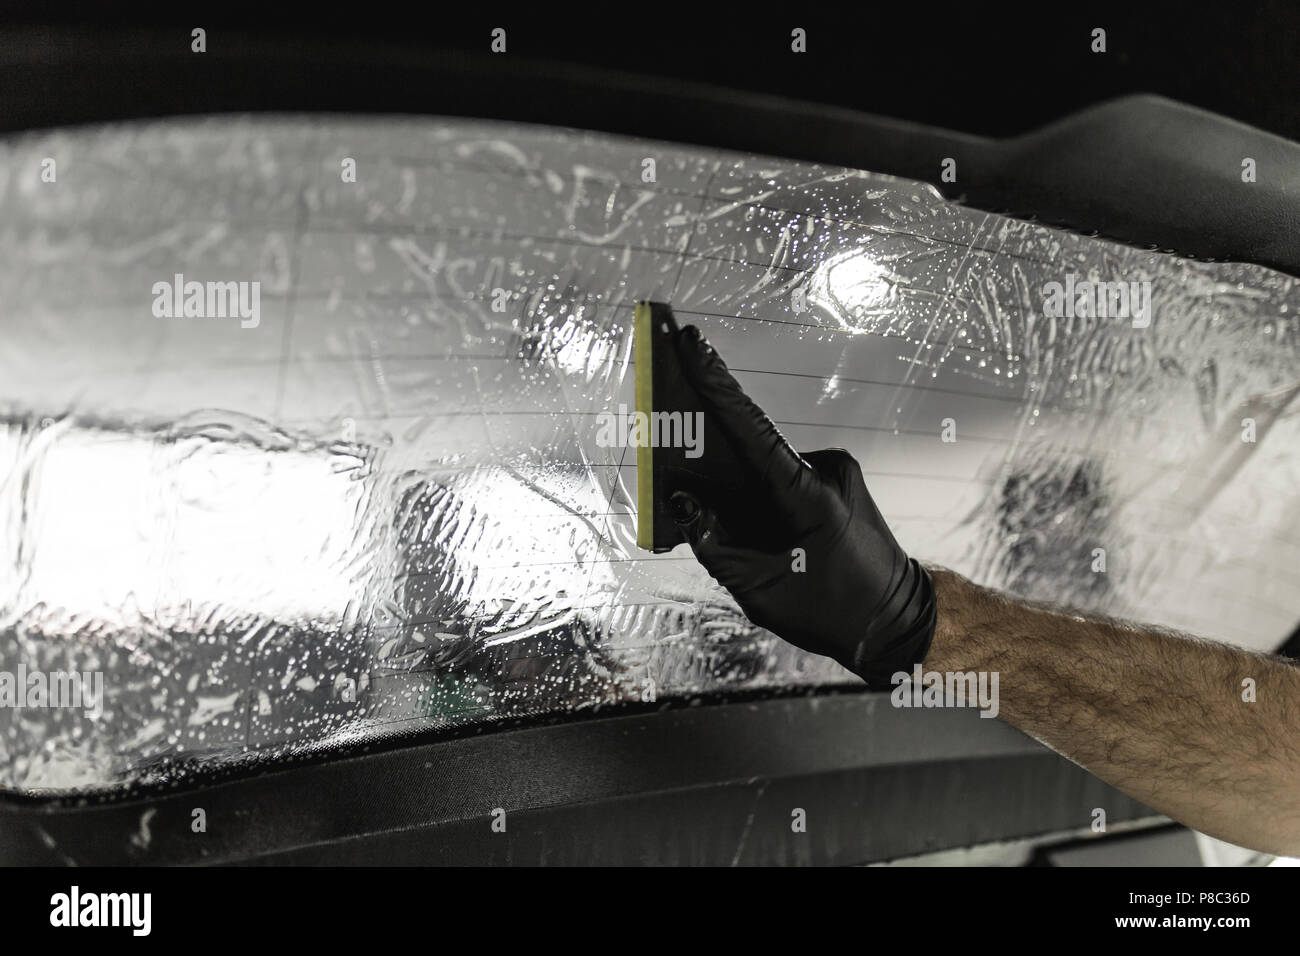 Die Tönung Folie auf Auto Fenster in einer Garage Stockfotografie - Alamy